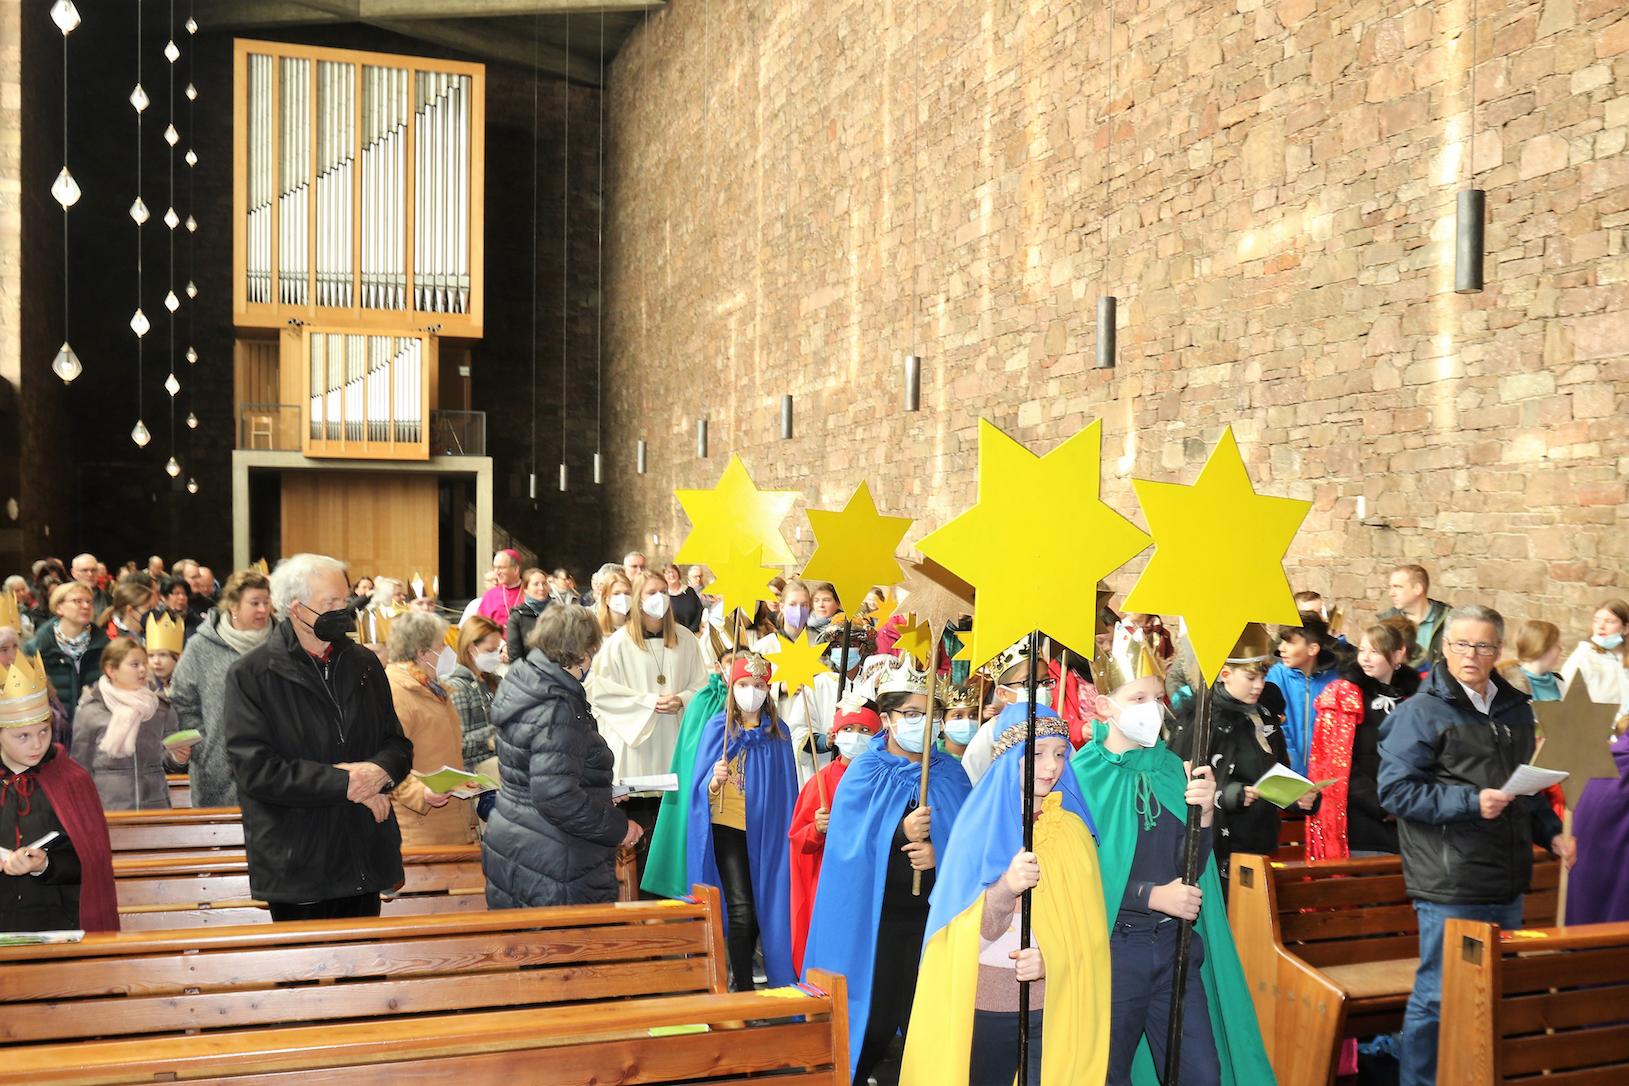 Die Aussendungsfeier der Aktion Dreikönigssingen fand in der Dürener Annakirche statt. Etwa 200 Sternsinger aus dem gesamten Bistum nahmen daran teil.